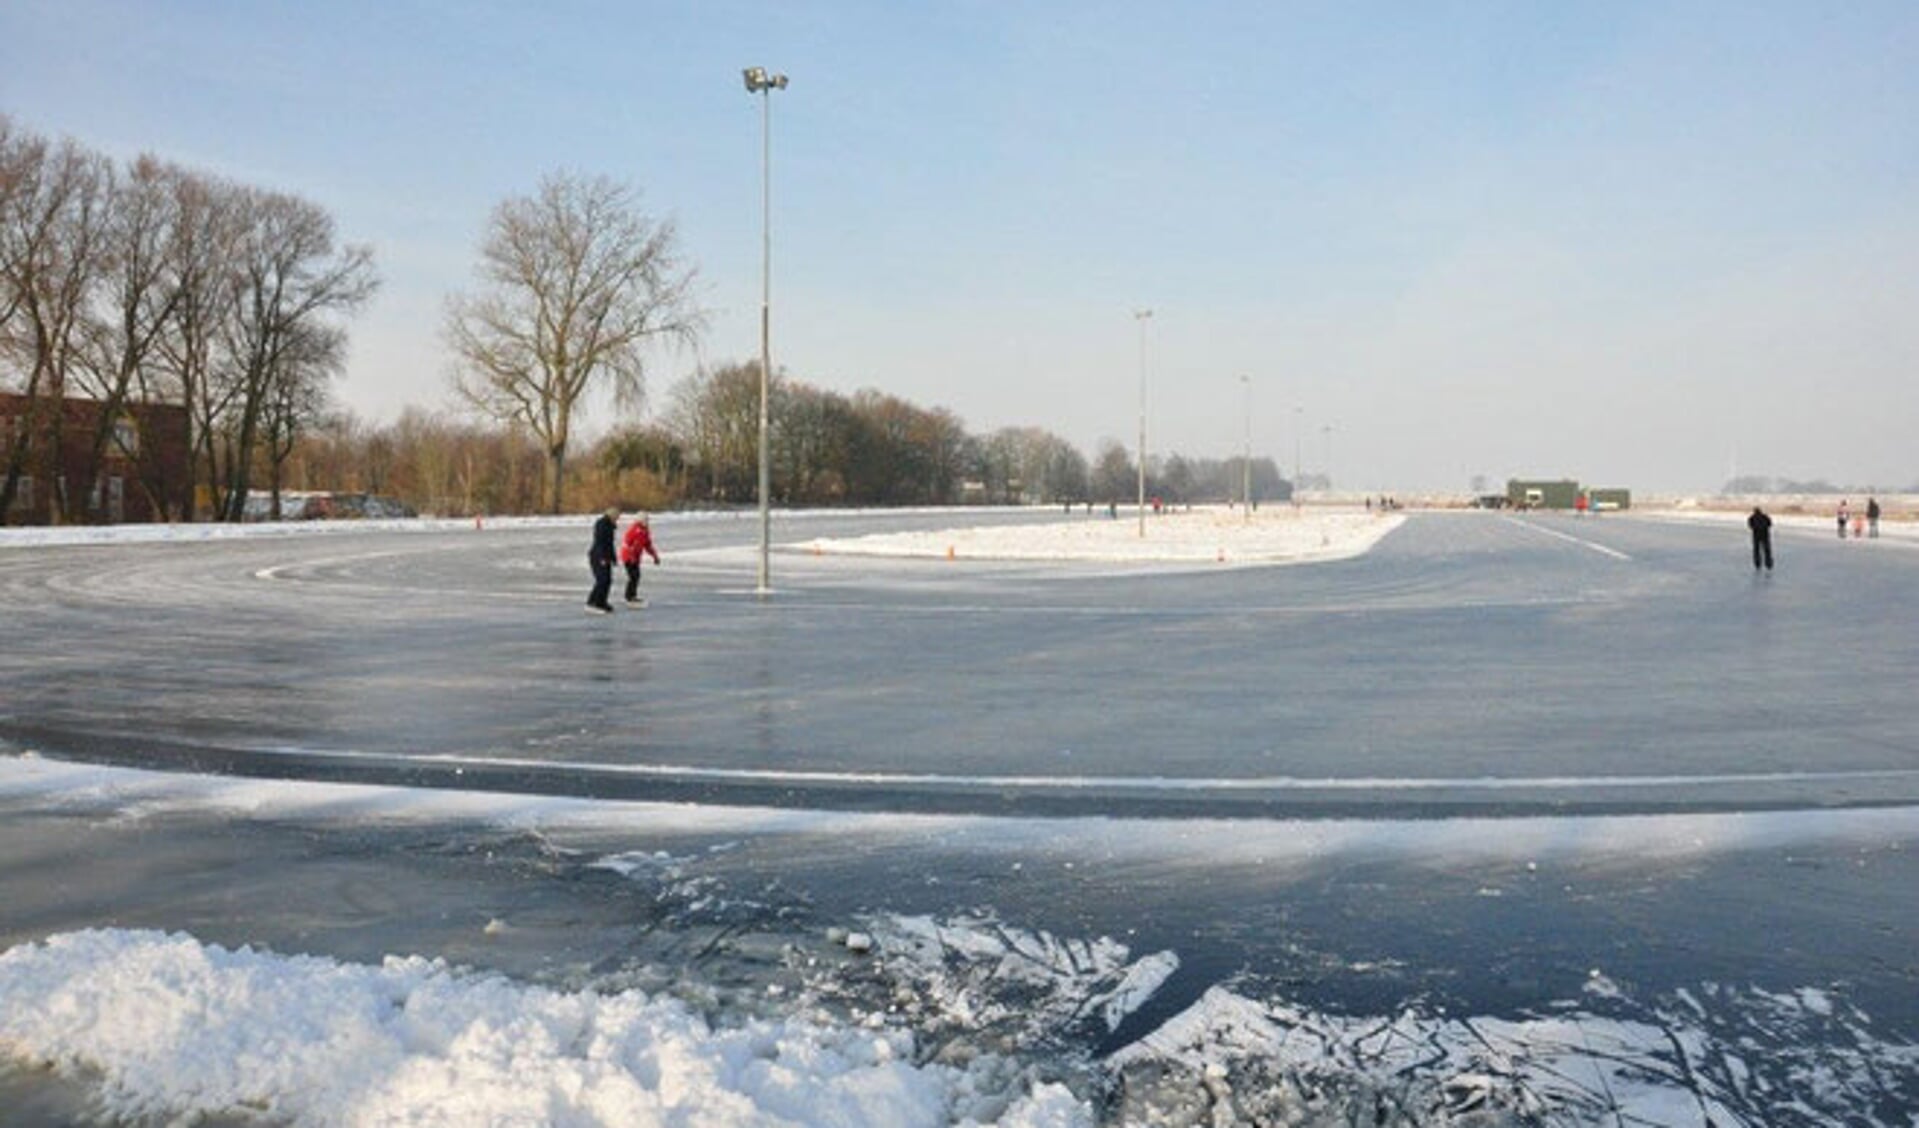 Zullen we weer eens kunnen schaatsen deze winter?